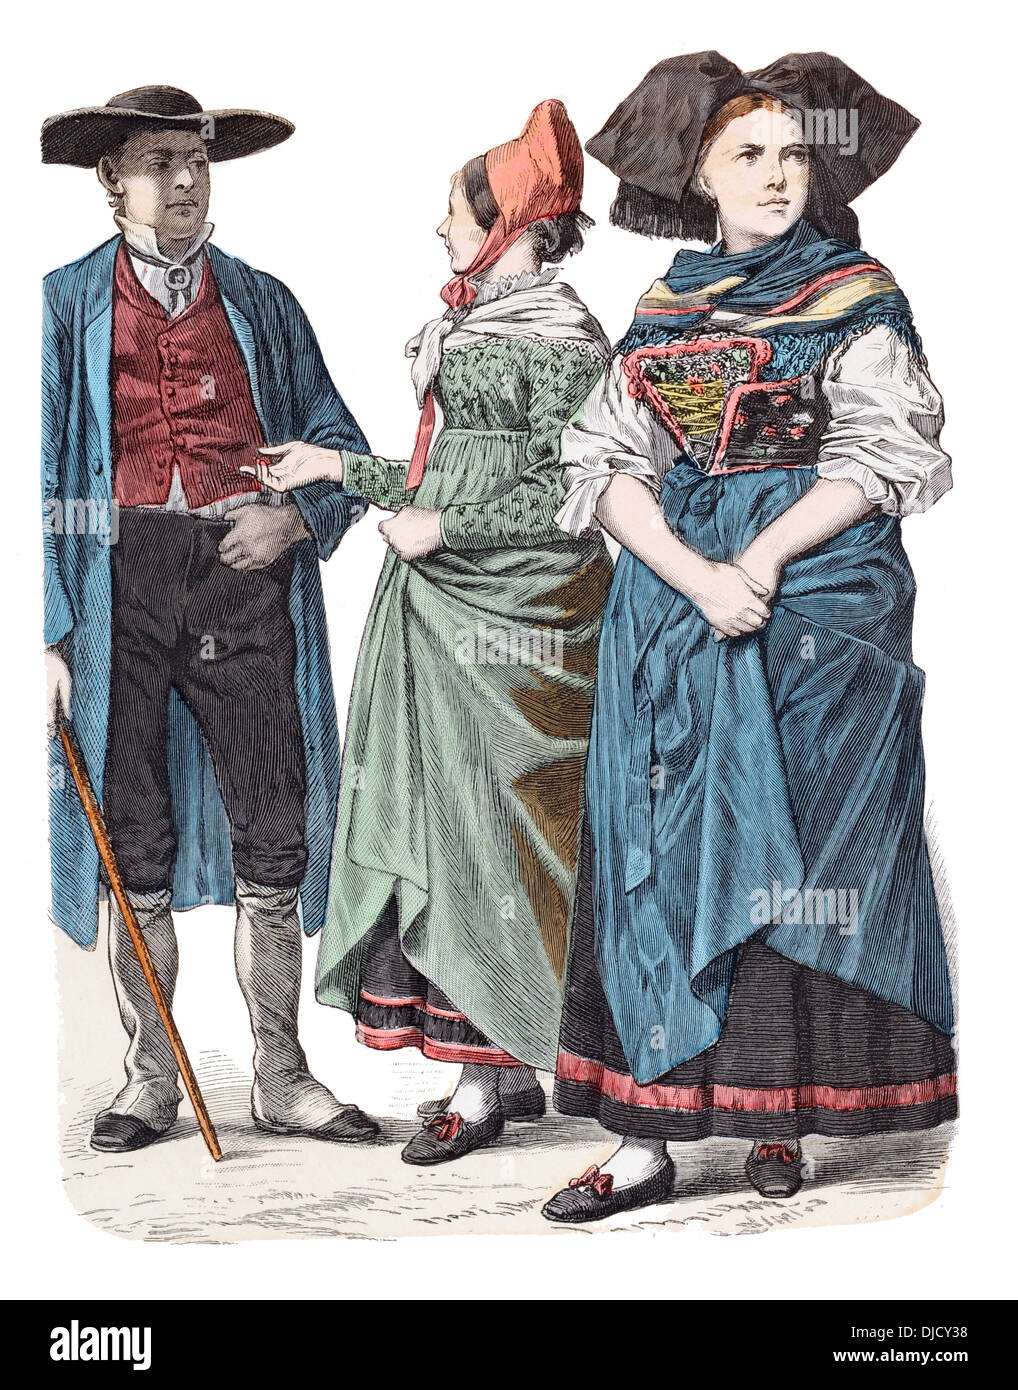 Fin du 19e siècle XIX 1800 costumes d'Alsace Française (de gauche à droite) Oberseebach, Uschbach et Strasbourg Banque D'Images